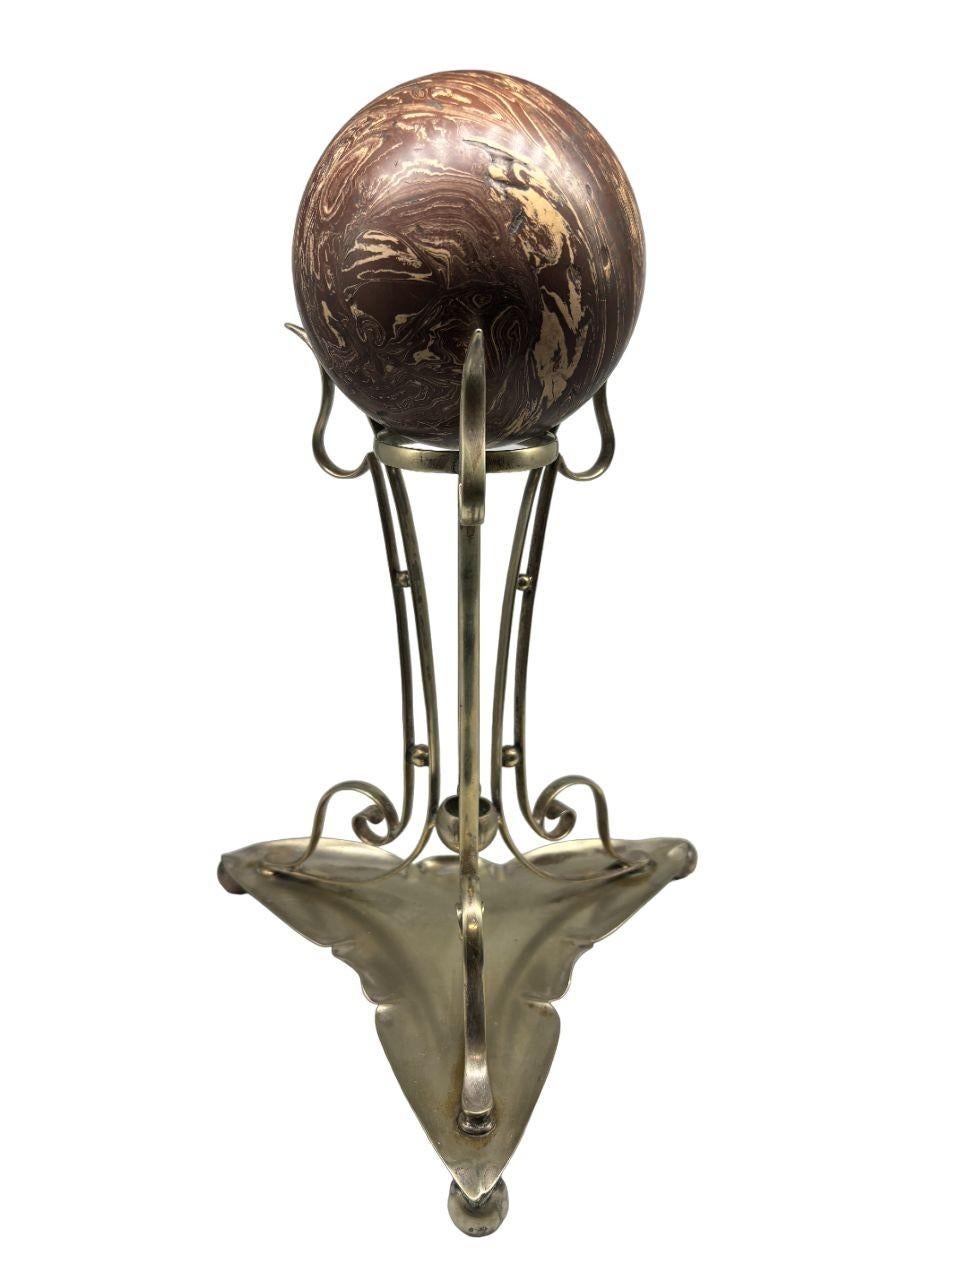 Voici un charmant objet de décoration vintage : un support en métal argenté orné d'une boule en bakélite. Ce support élégant dégage une sophistication intemporelle, alliant l'allure lustrée de l'argent à la chaleur de la bakélite. Parfaite pour